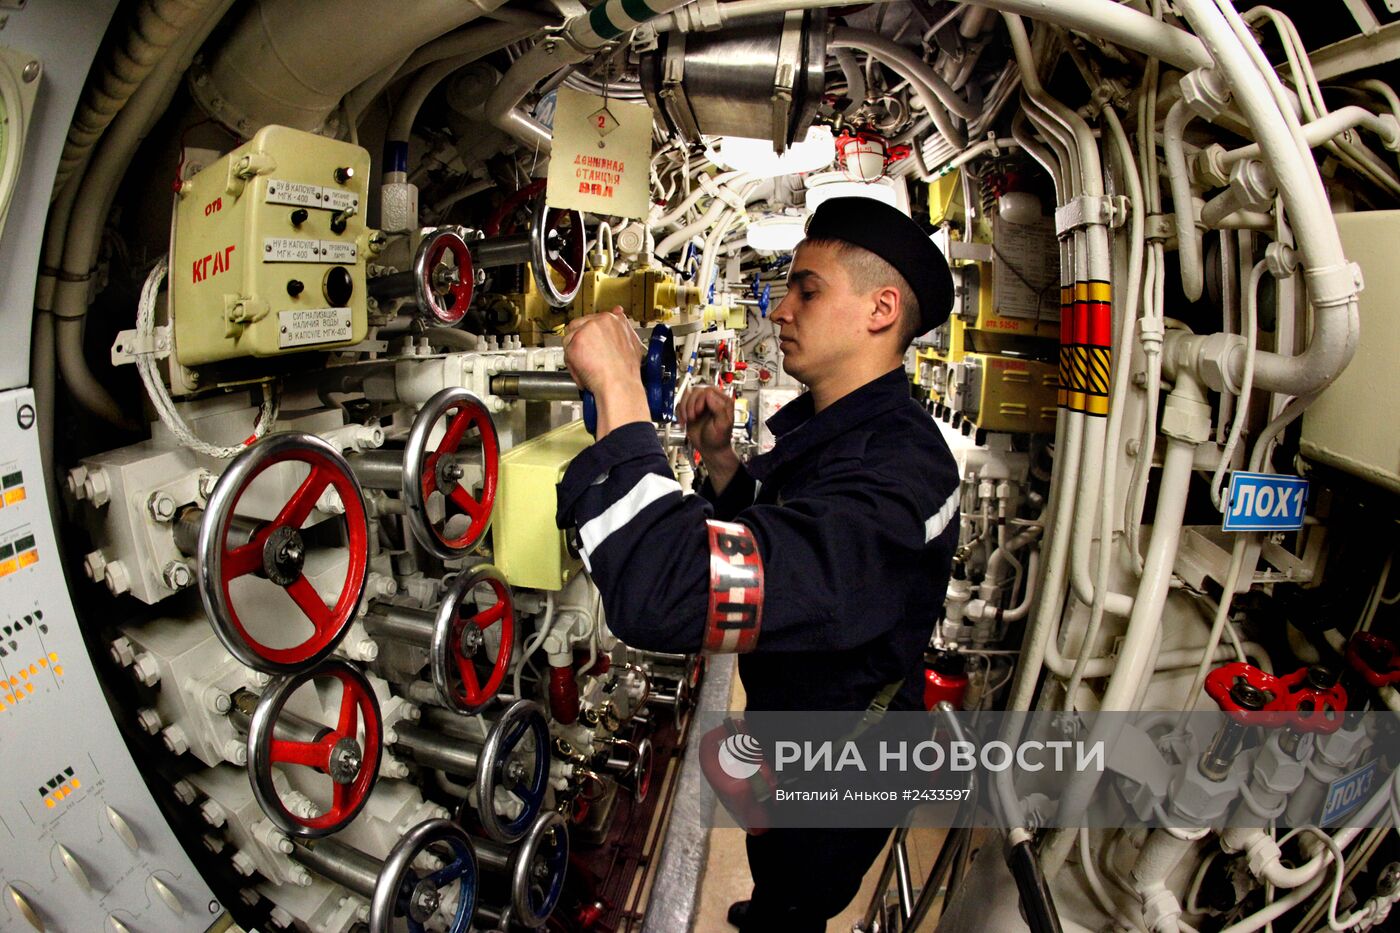 Будни экипажа дизельной подводной лодки "Усть-Камчатск" Тихоокеанского флота